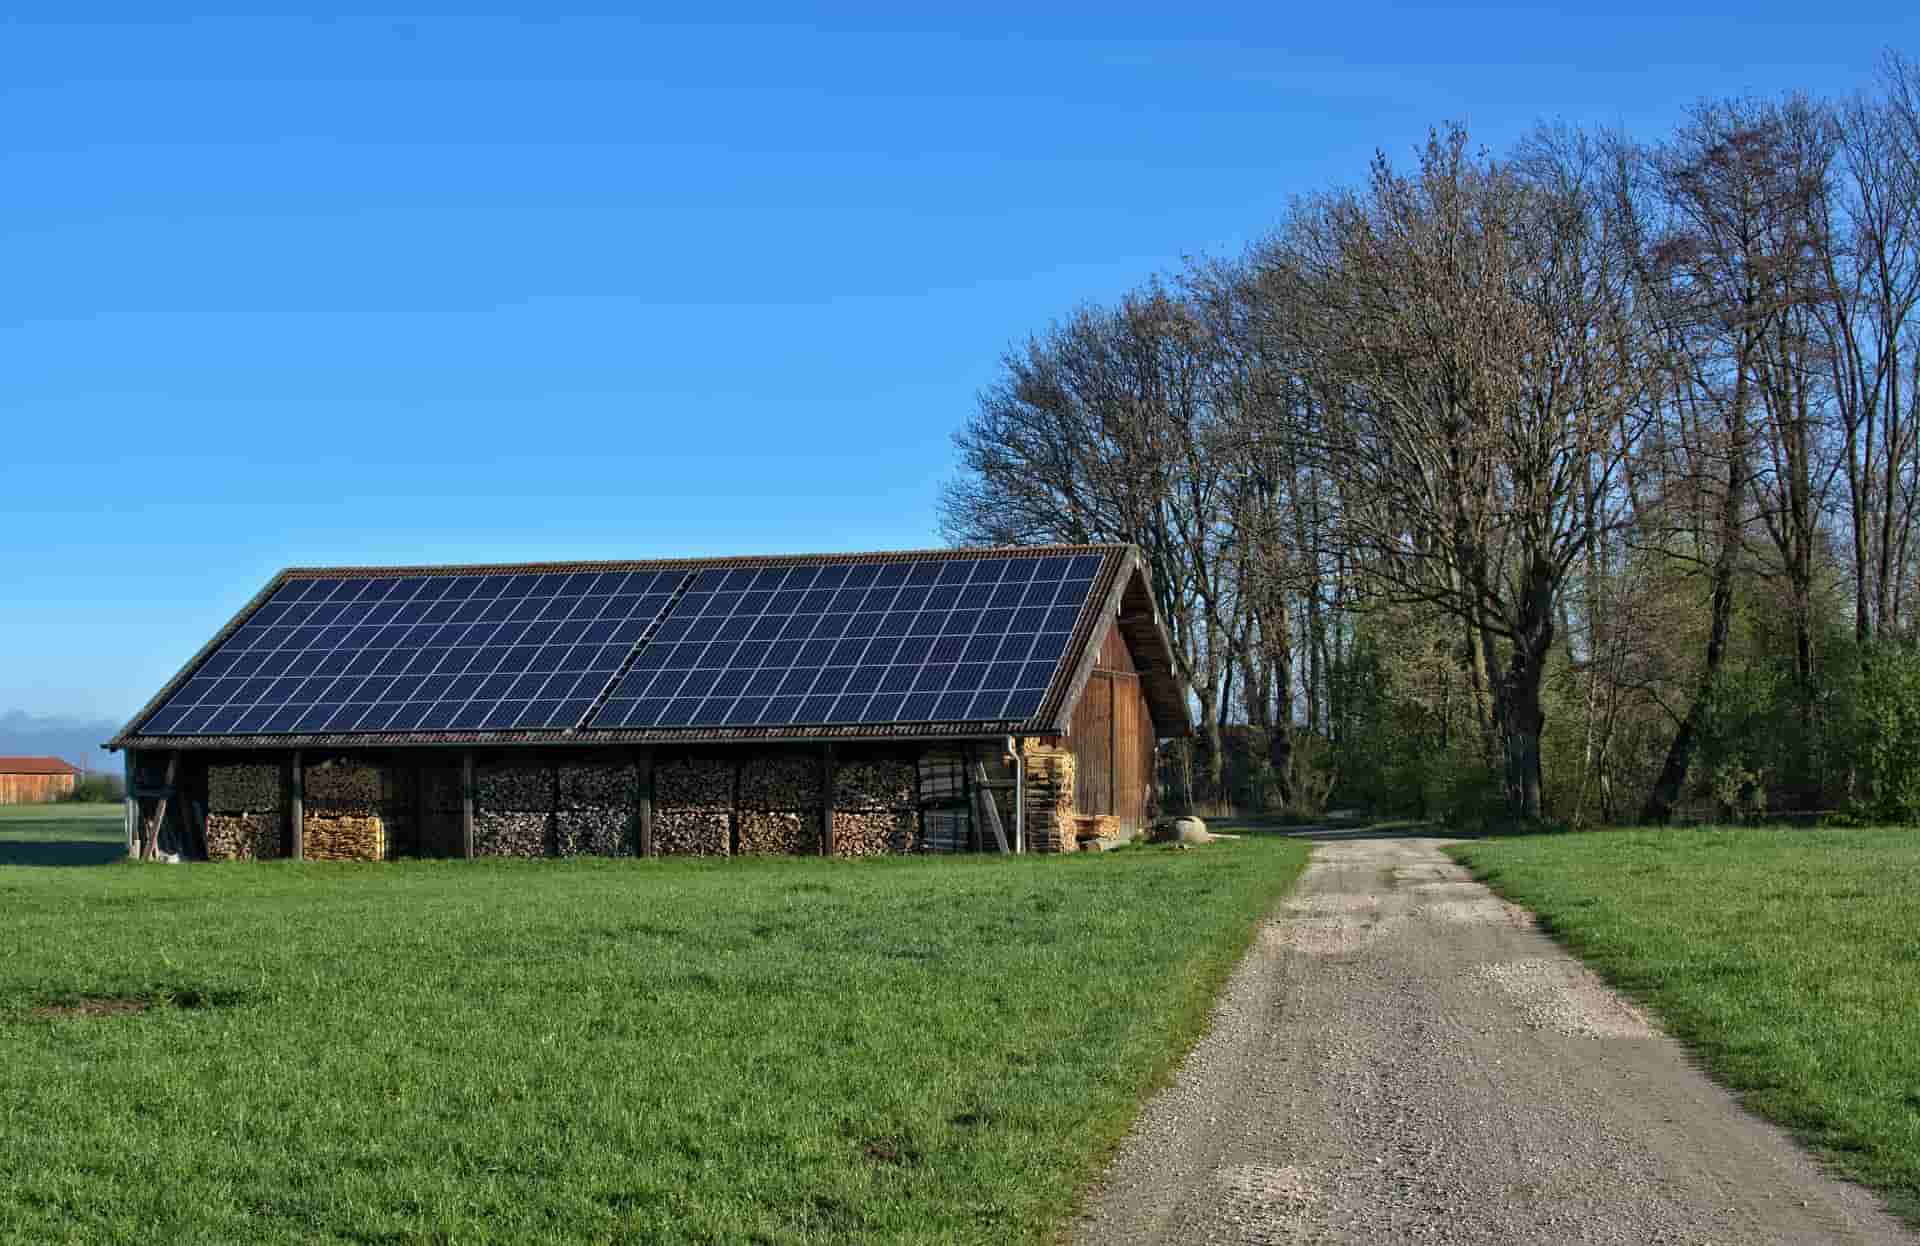 Batterie panneau solaire : prix, fonctionnement et conseils